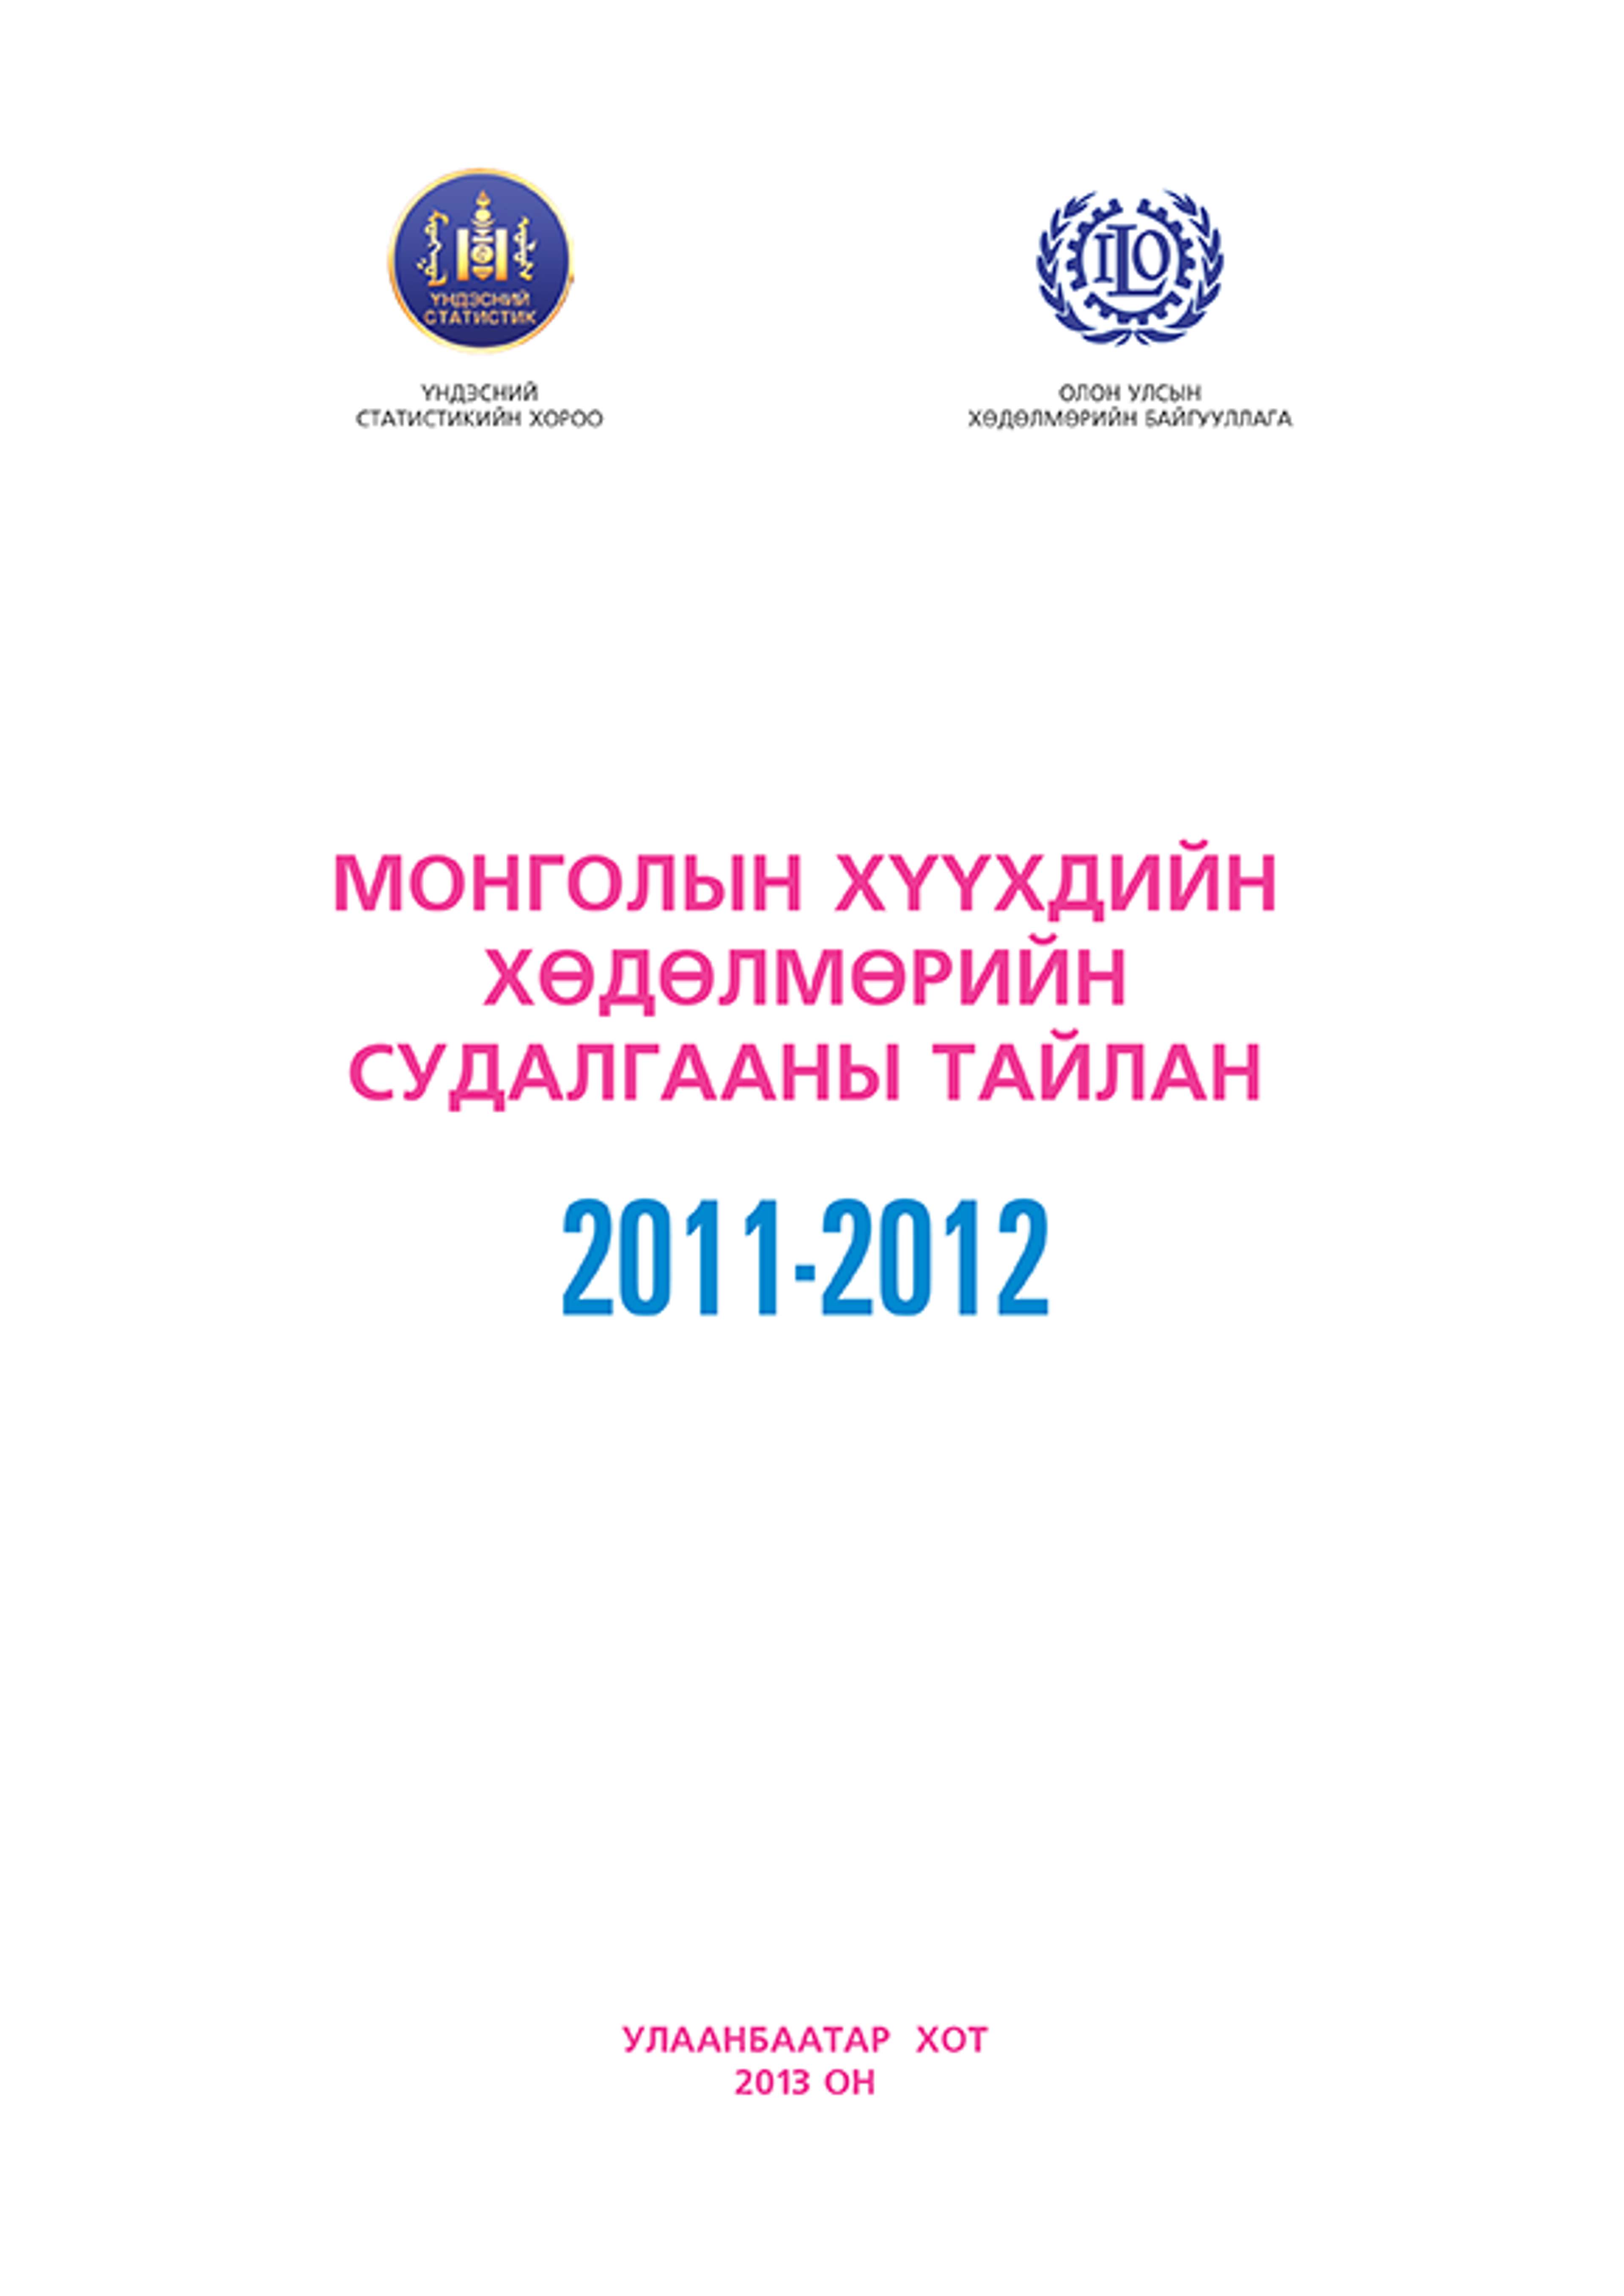 Хүүхдийн хөдөлмөрийн судалгааны тайлан 2011-2012 Монгол